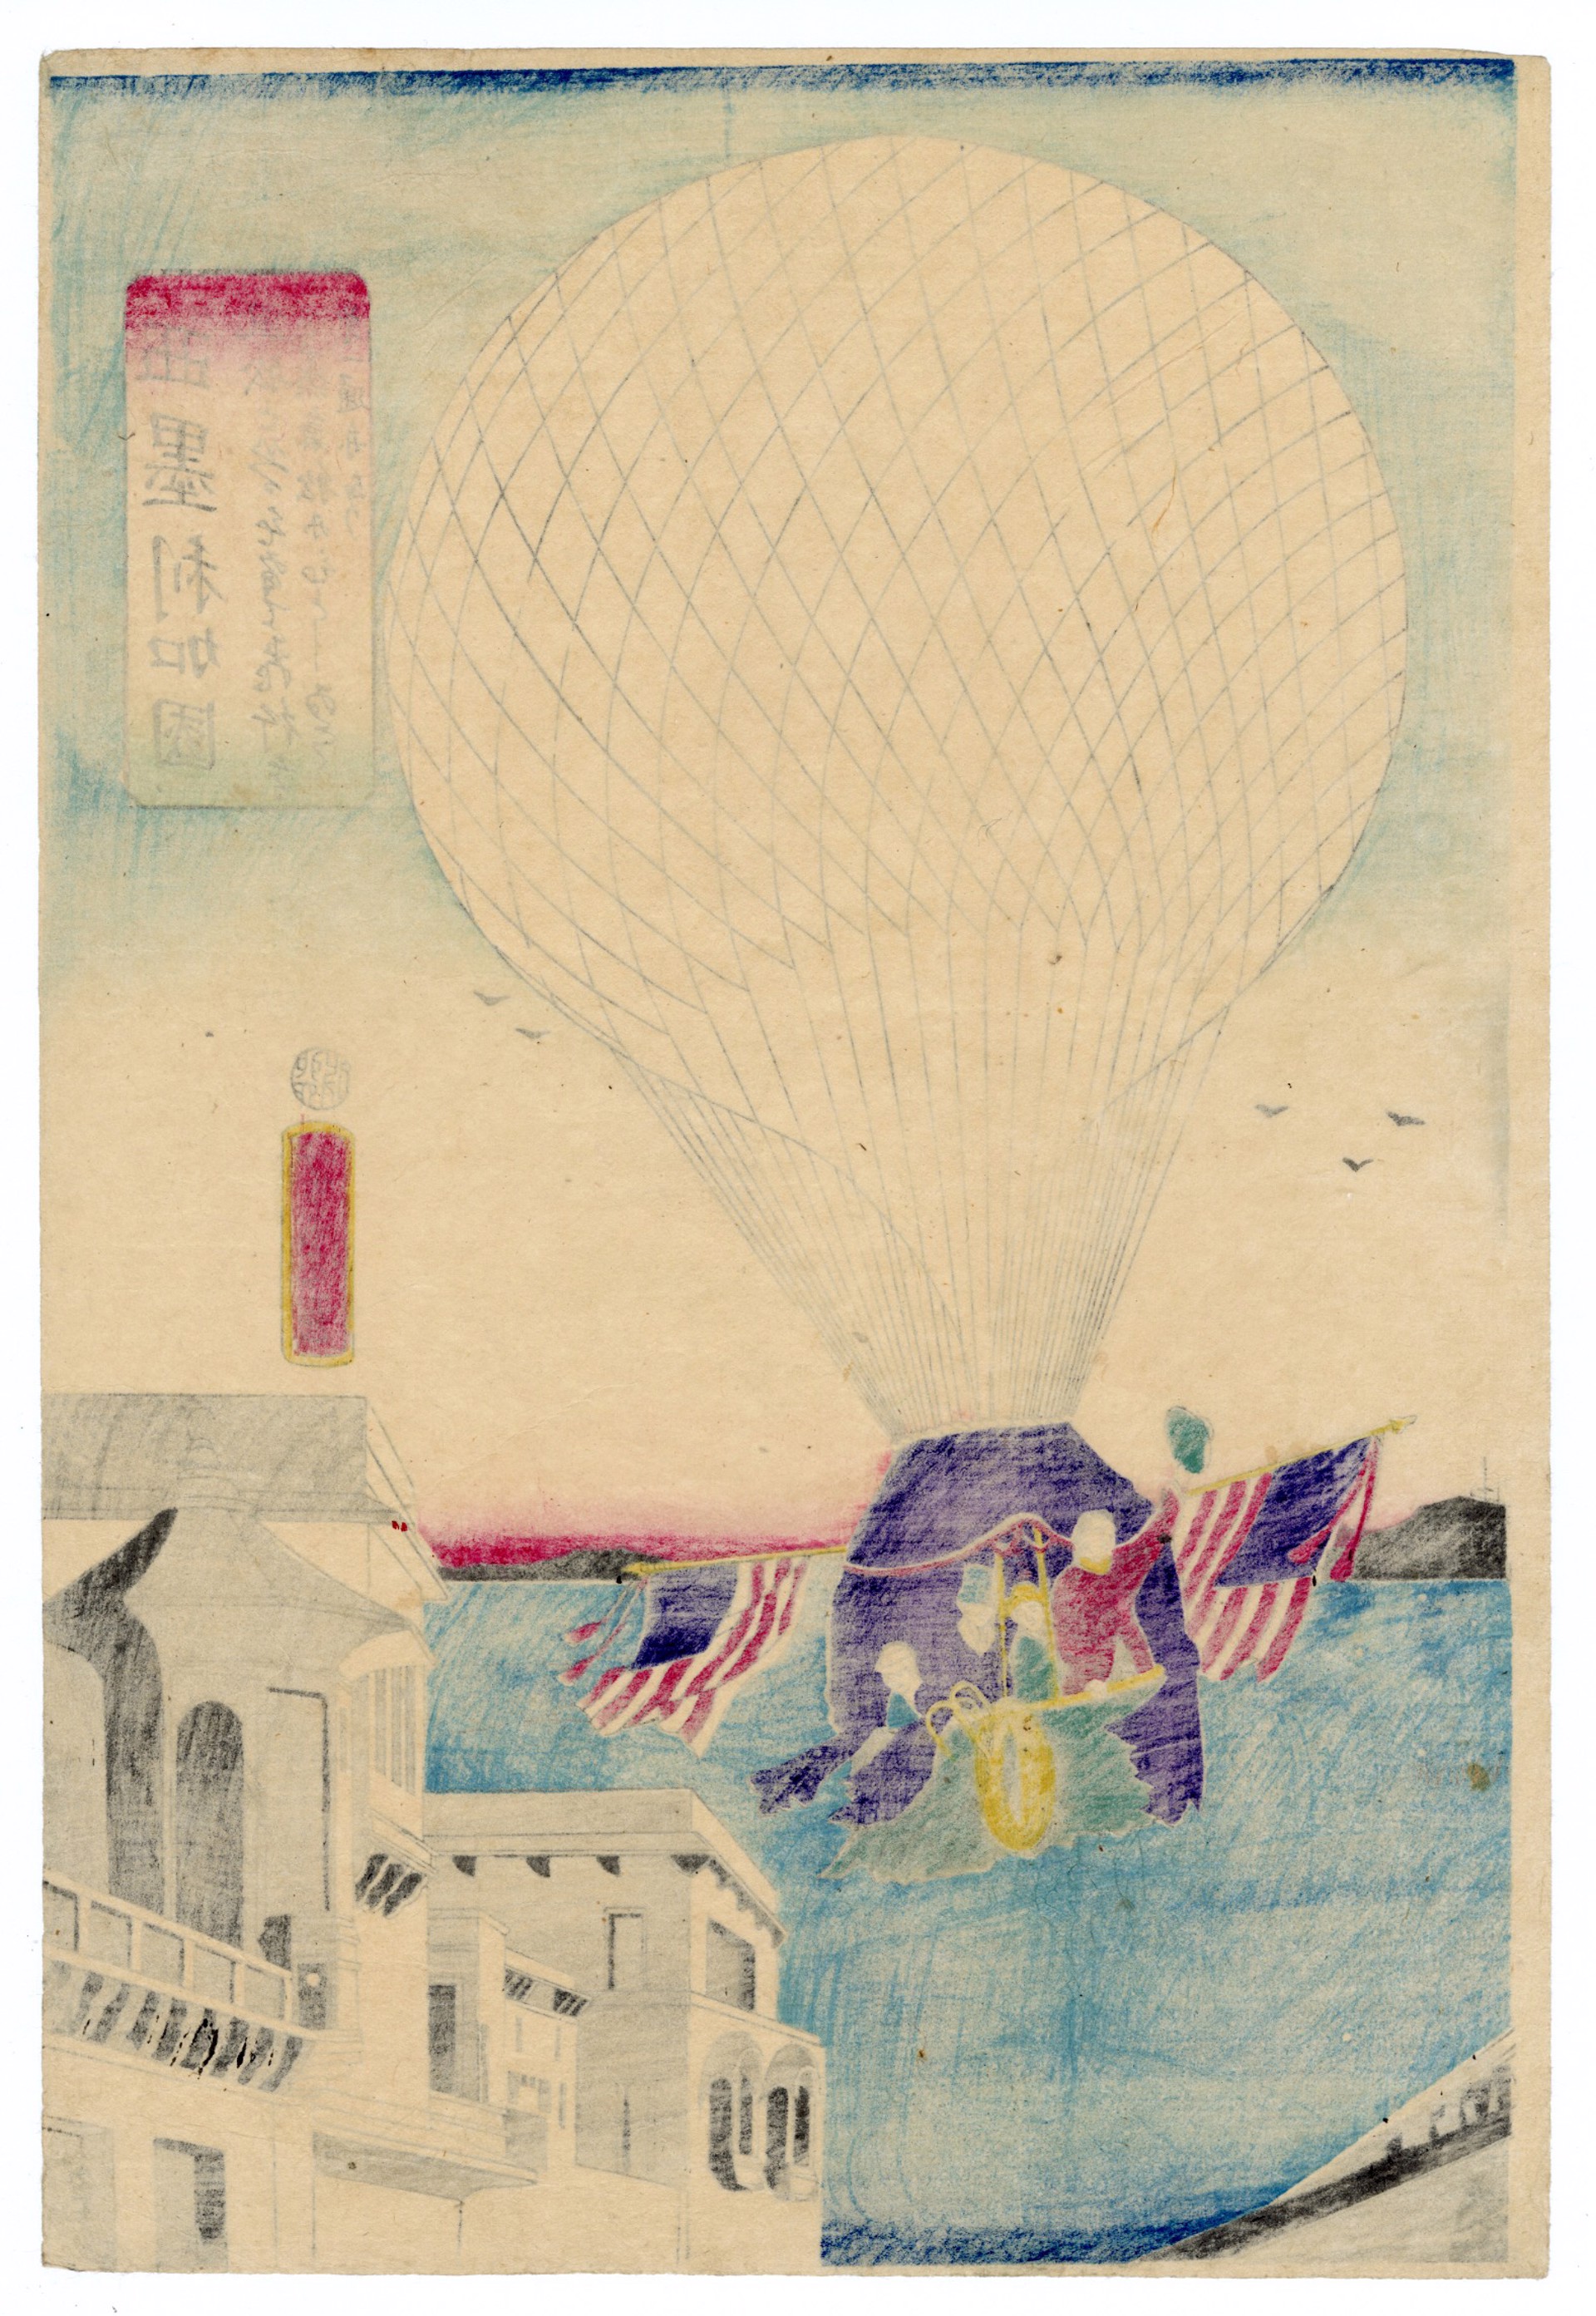 America: Enjoying Hot Air Balloons by Yoshitora